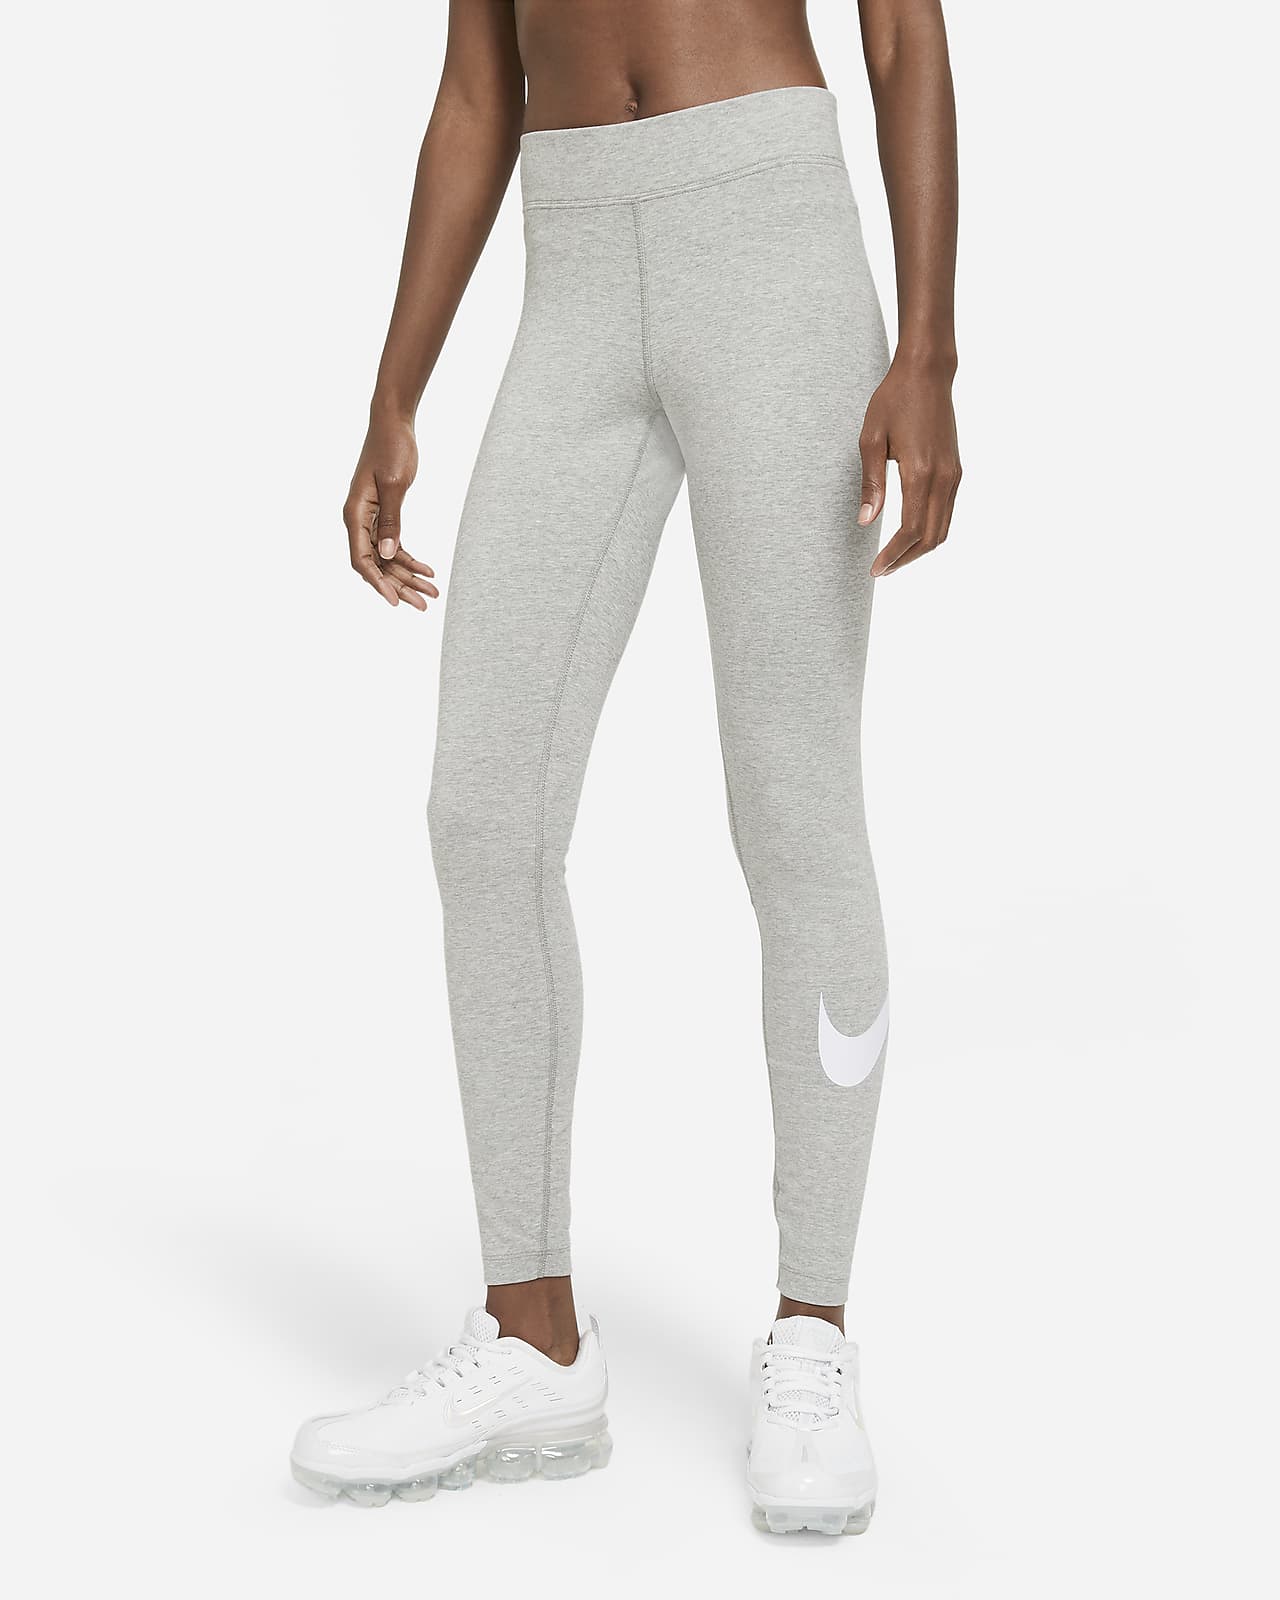 Dámské legíny Nike Sportswear Essential Swoosh se středně vysokým pasem